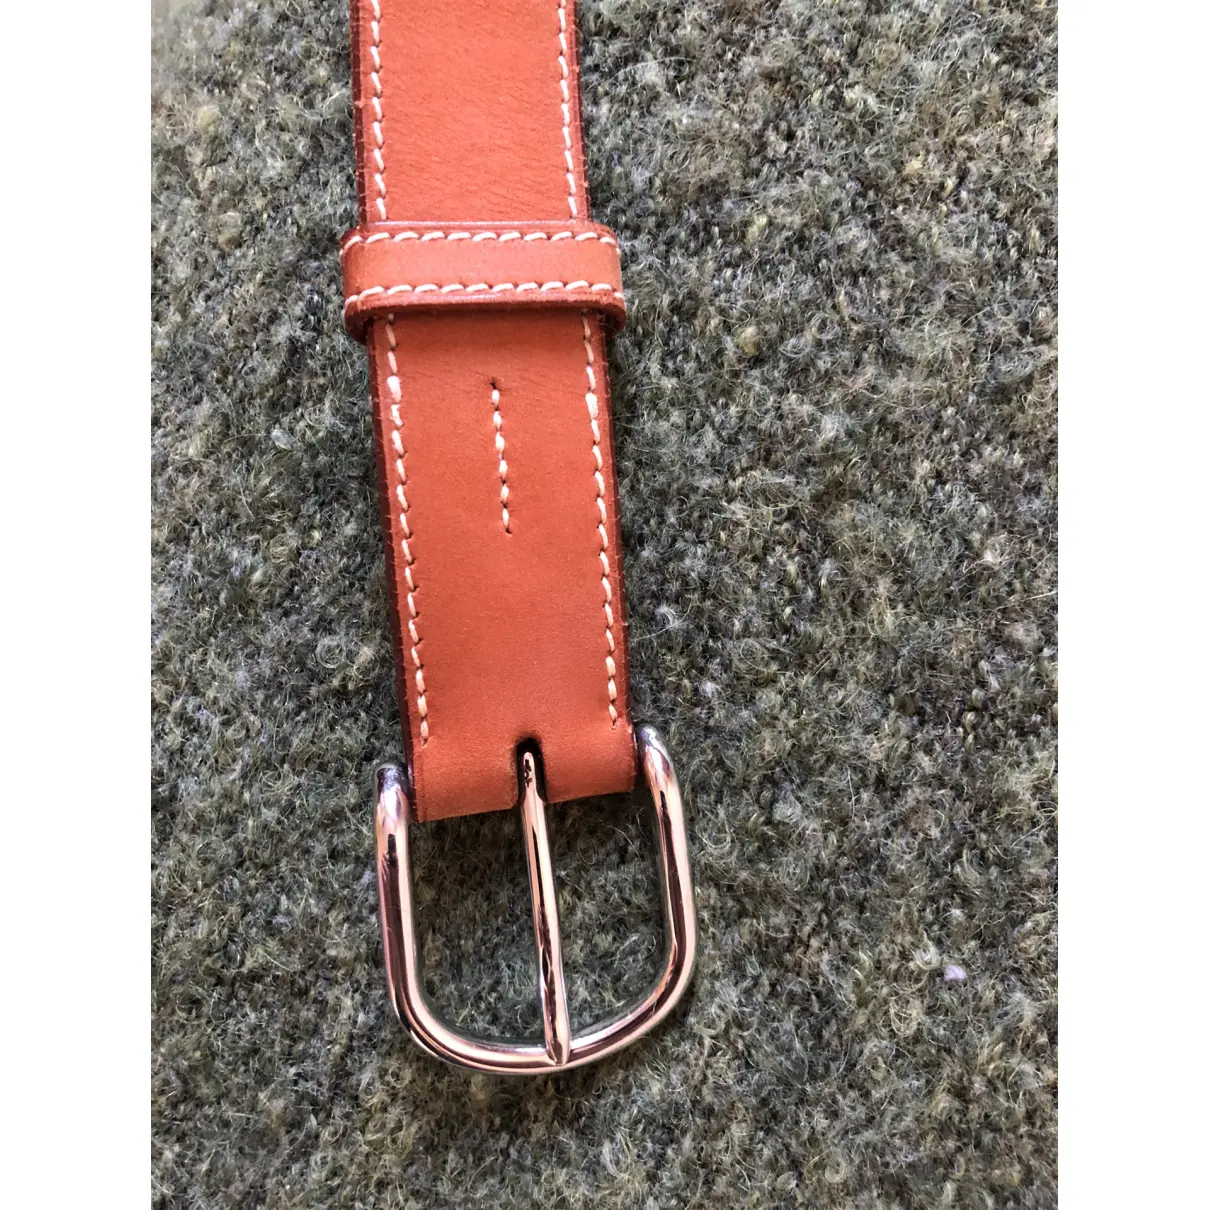 Buy Hermès Leather belt online